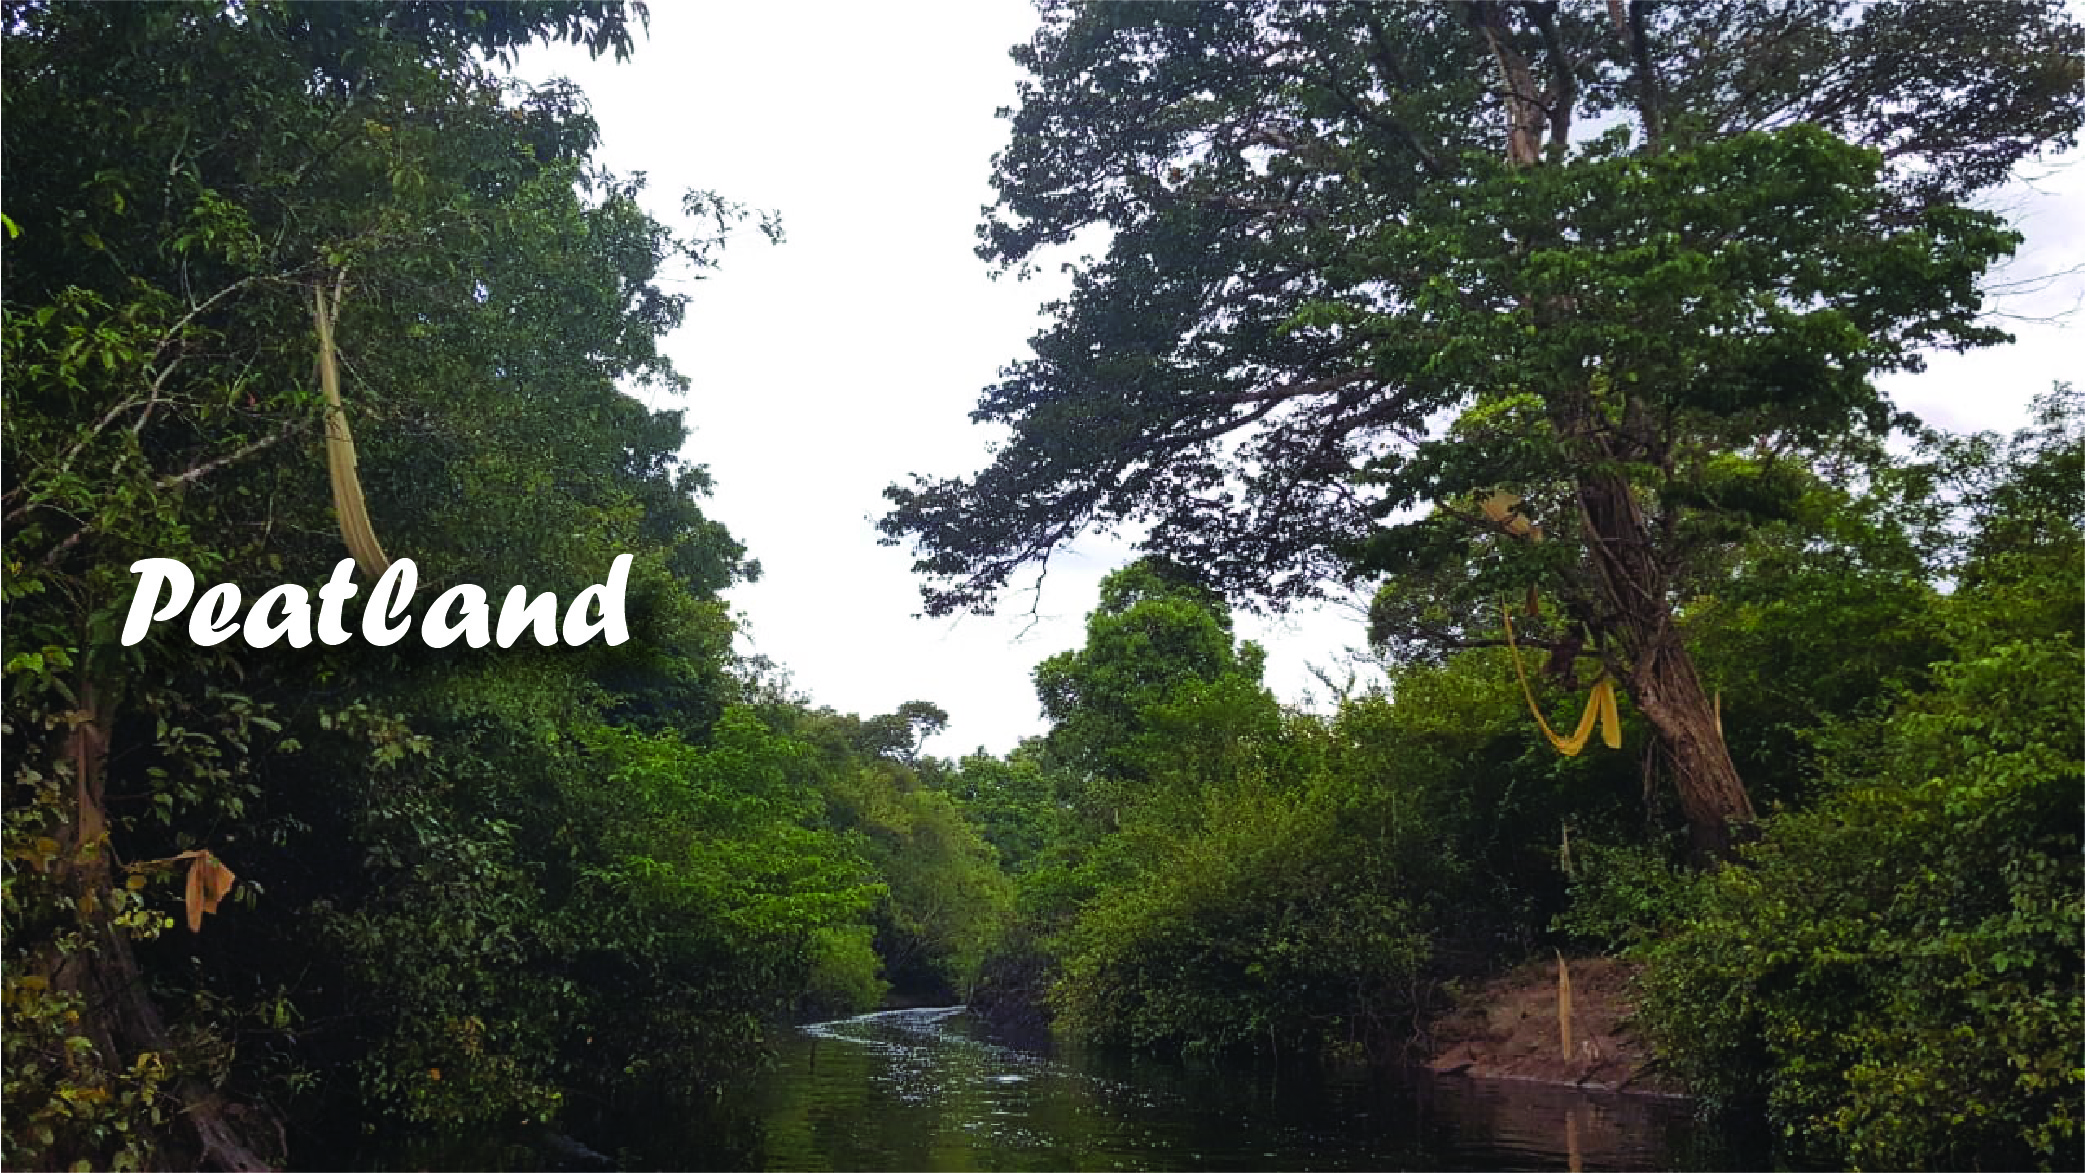 3 Steps of Restoring Peatland in Indonesia